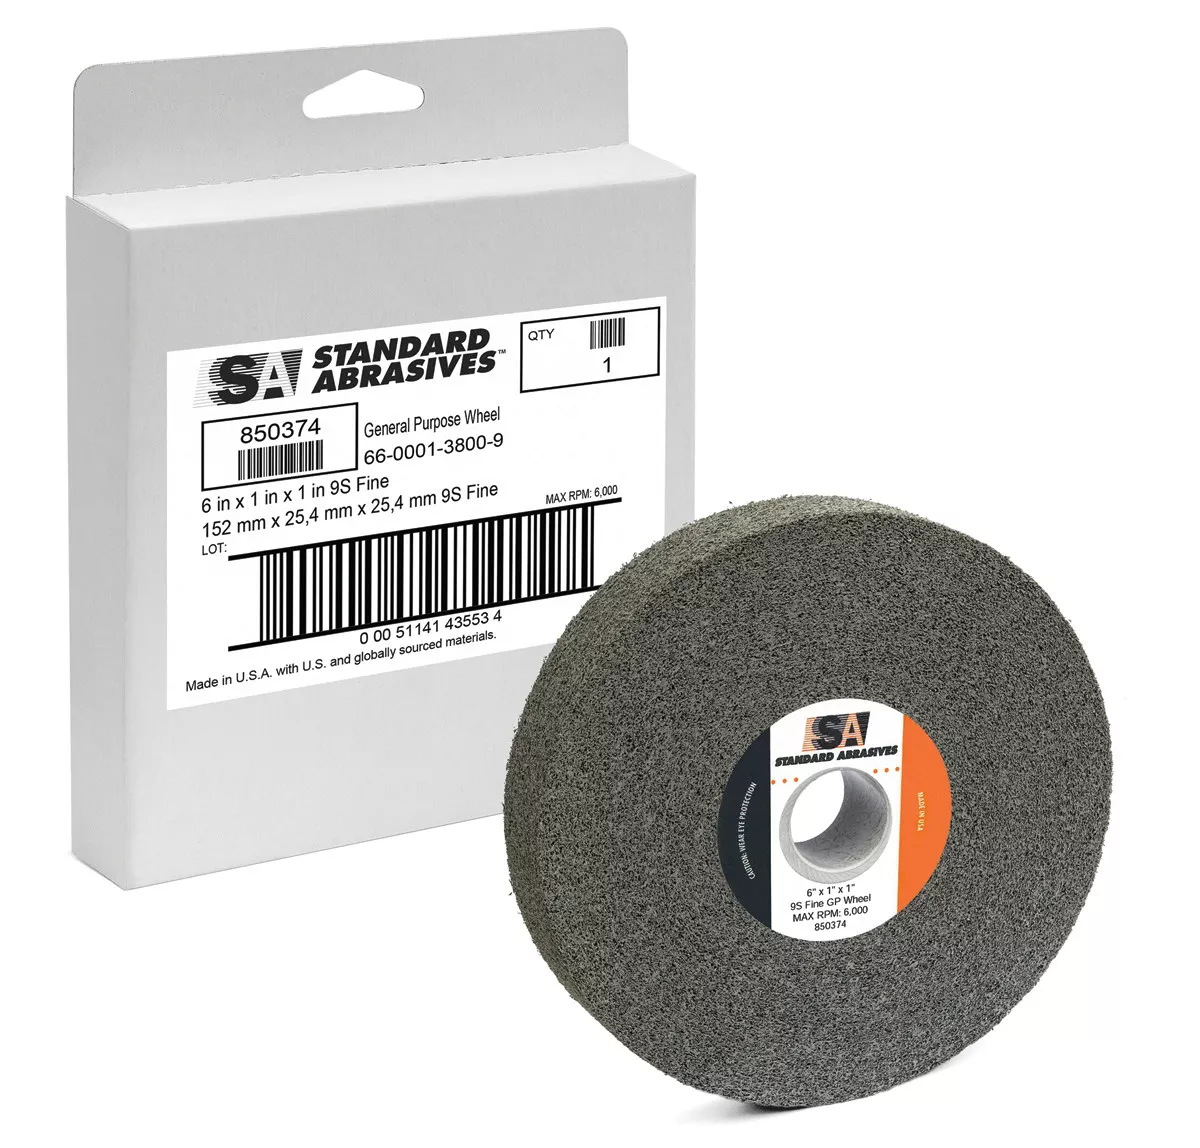 Standard Abrasives™ GP Wheel 852393, 8 in x 1 in x 3 in 7S FIN, 3
ea/Case